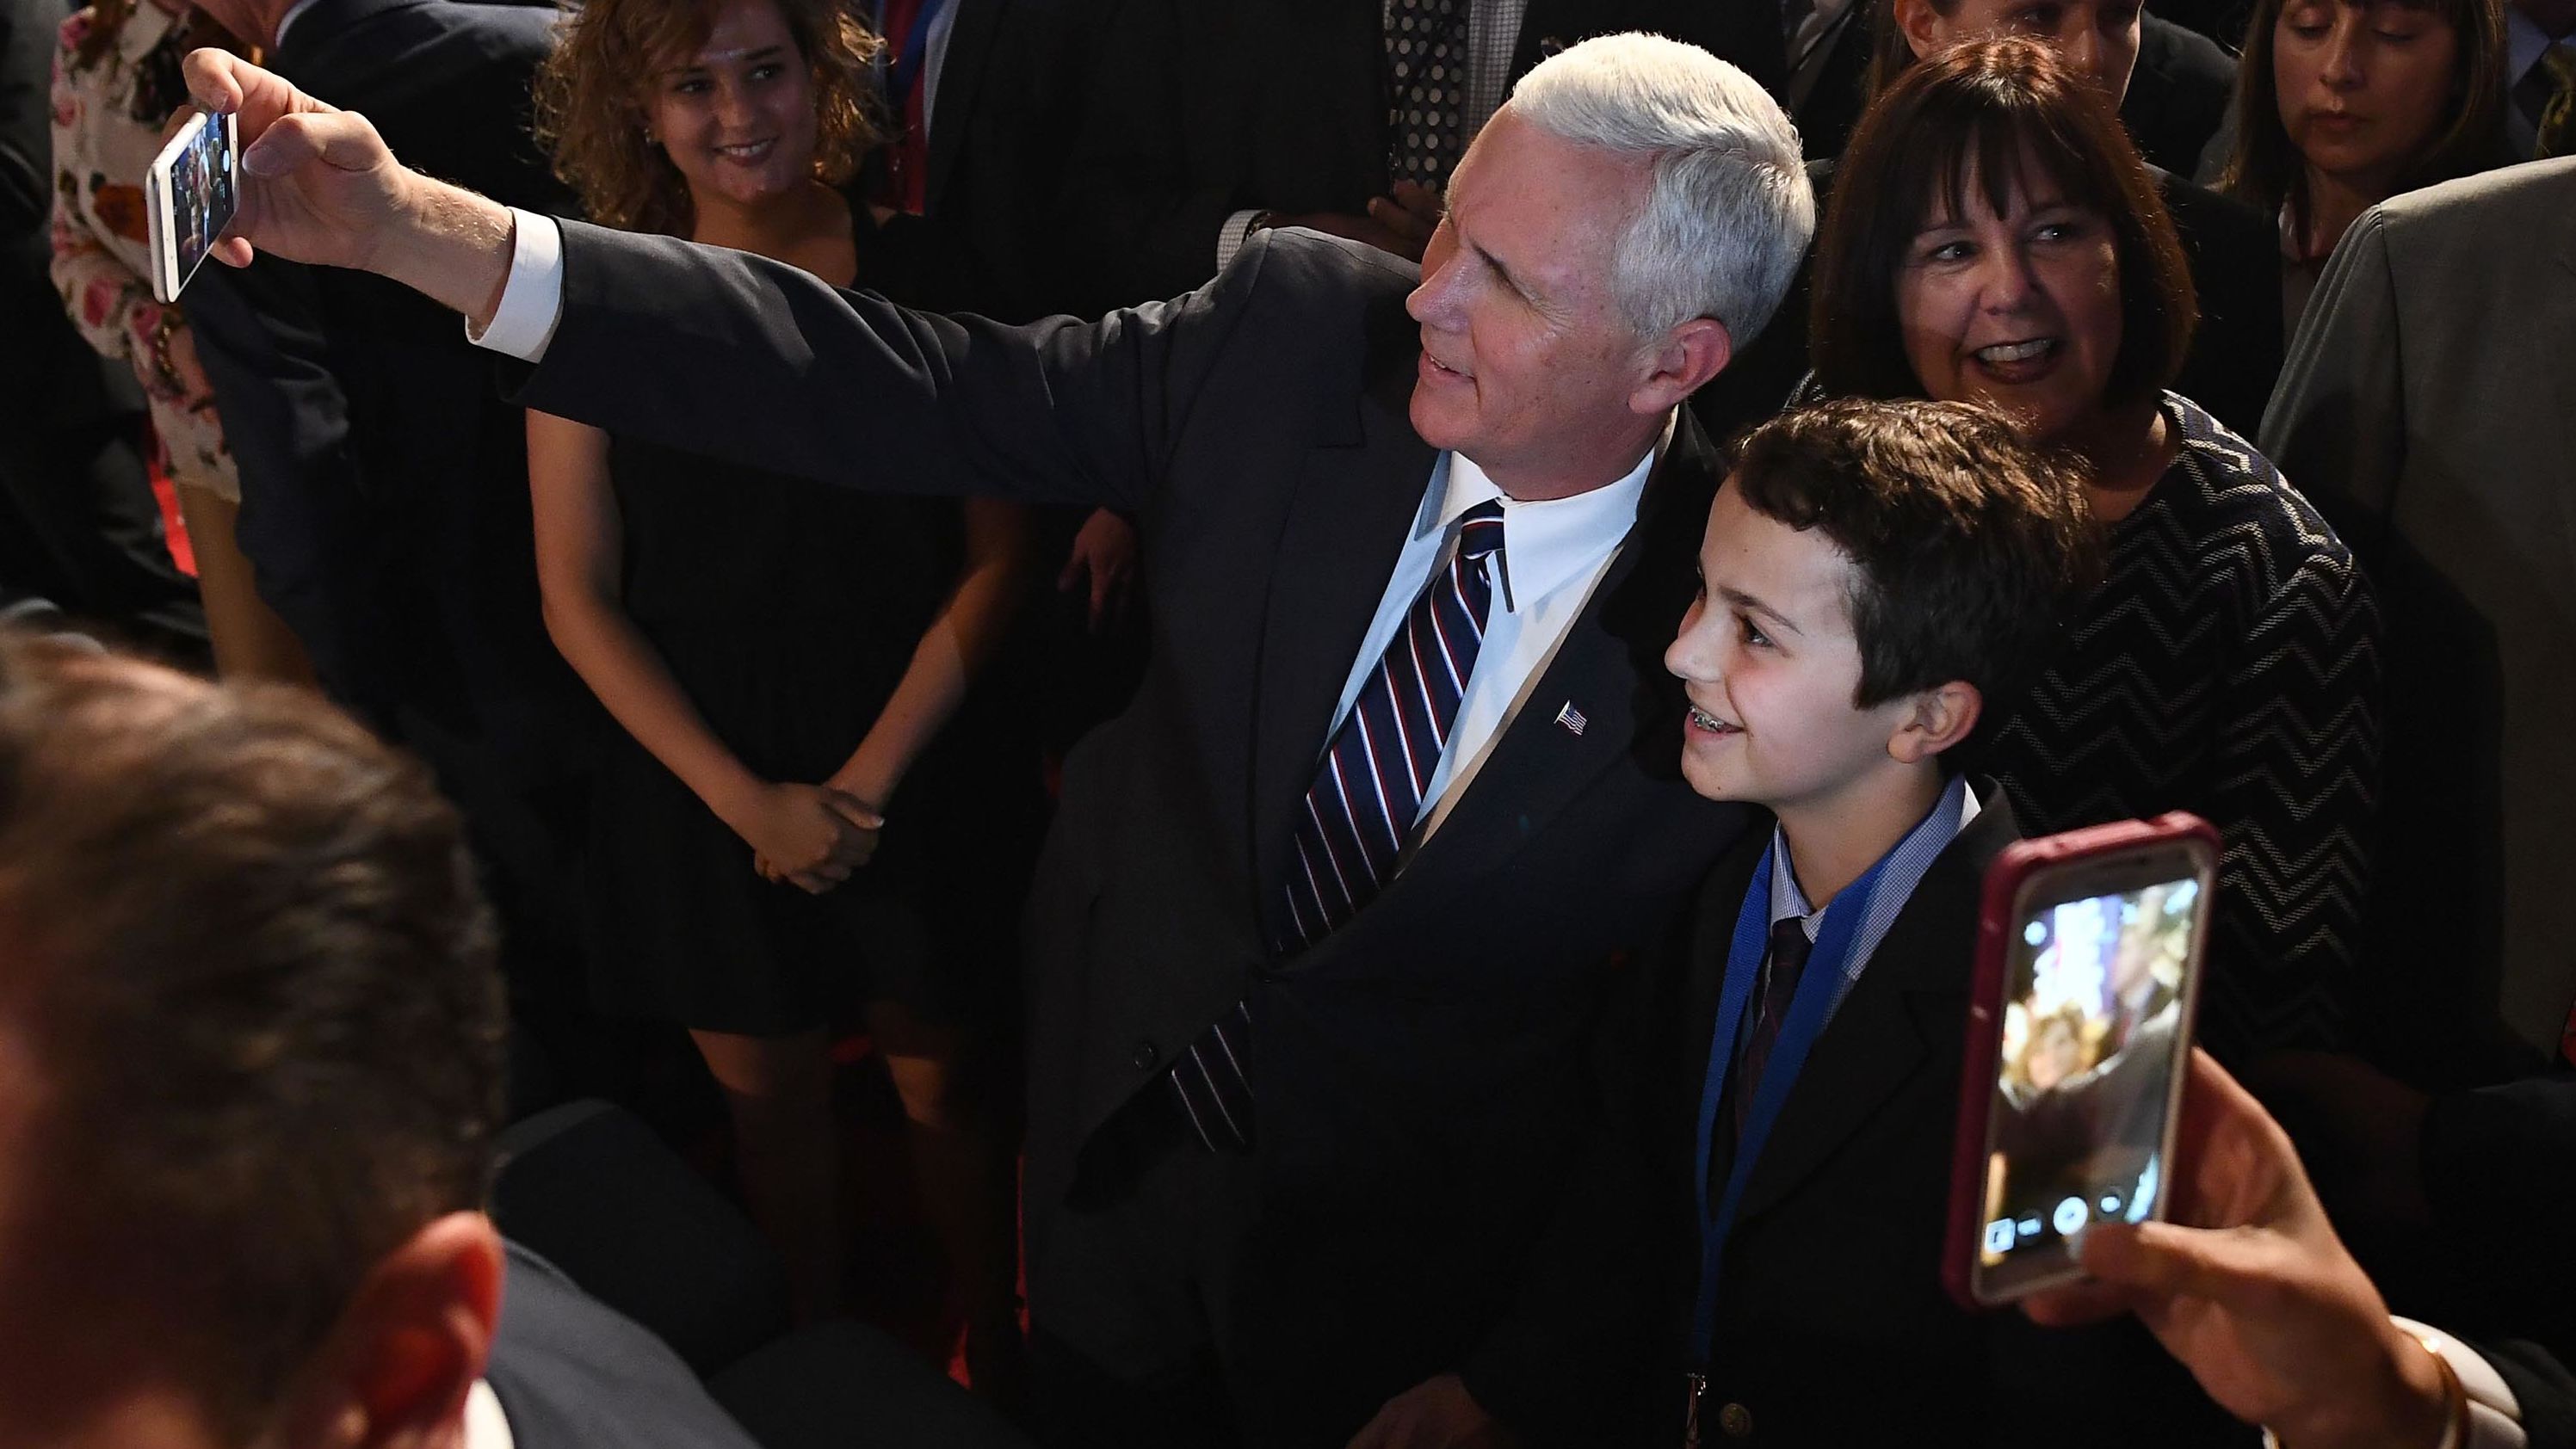 Pence takes a selfie before a presidential debate in Hempstead, New York, in September 2016.